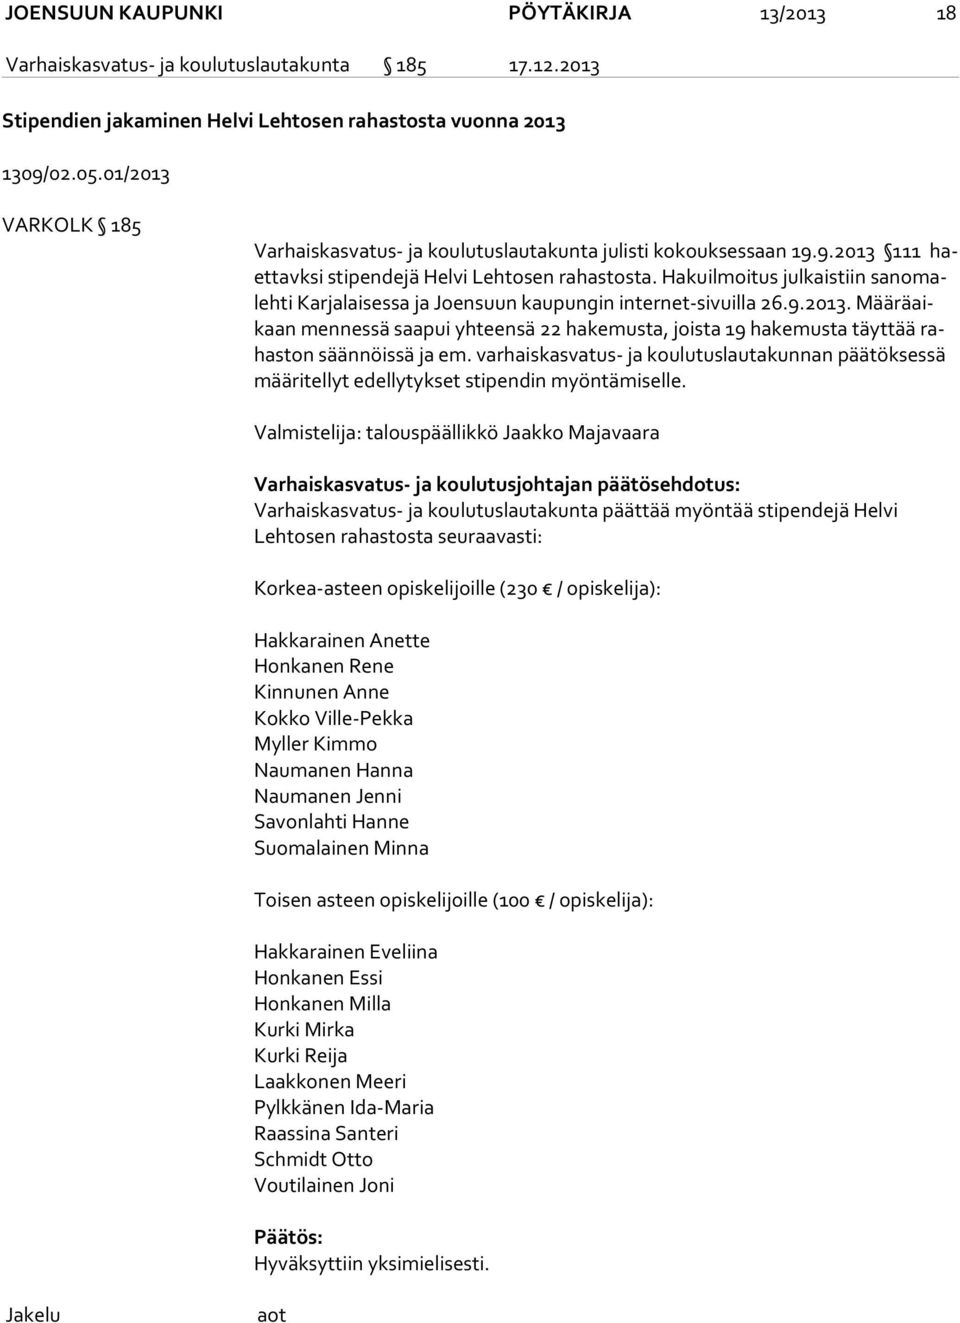 Hakuilmoitus julkaistiin sa no maleh ti Karjalaisessa ja Joensuun kaupungin internet-sivuilla 26.9.2013.